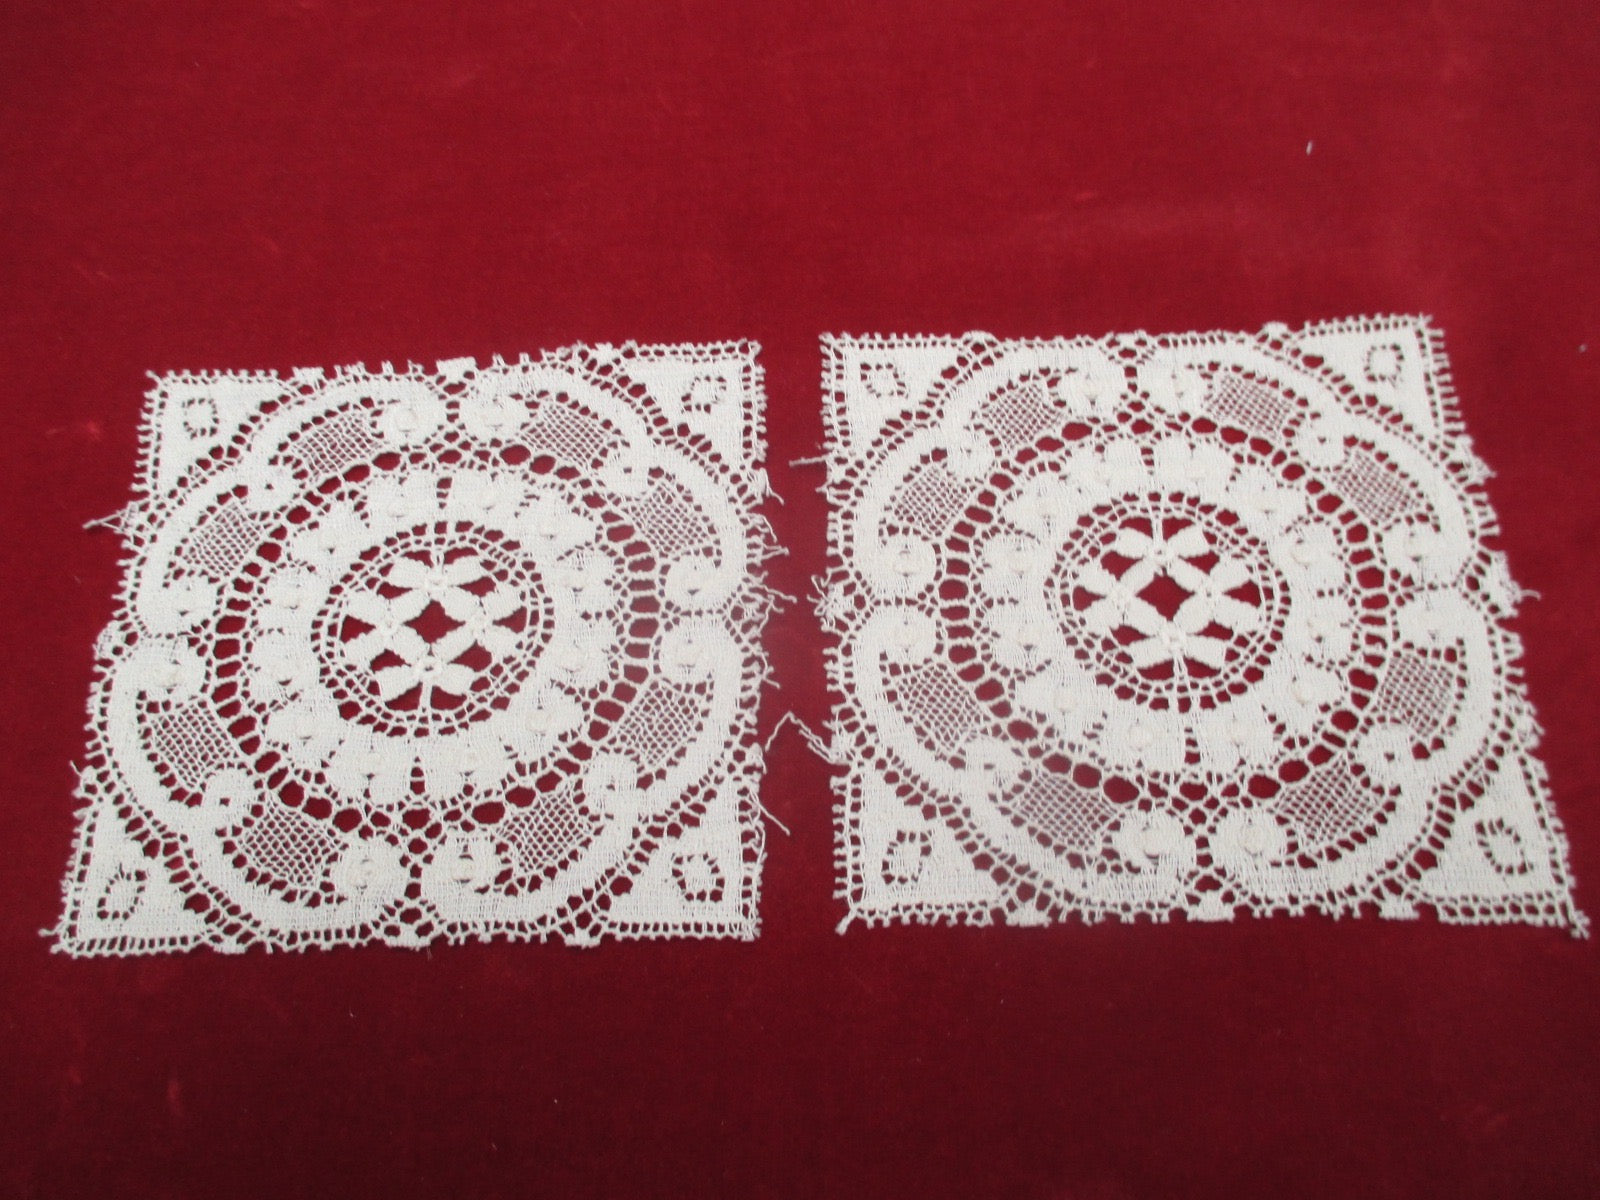 Antique Victorian lace doilies set of 2